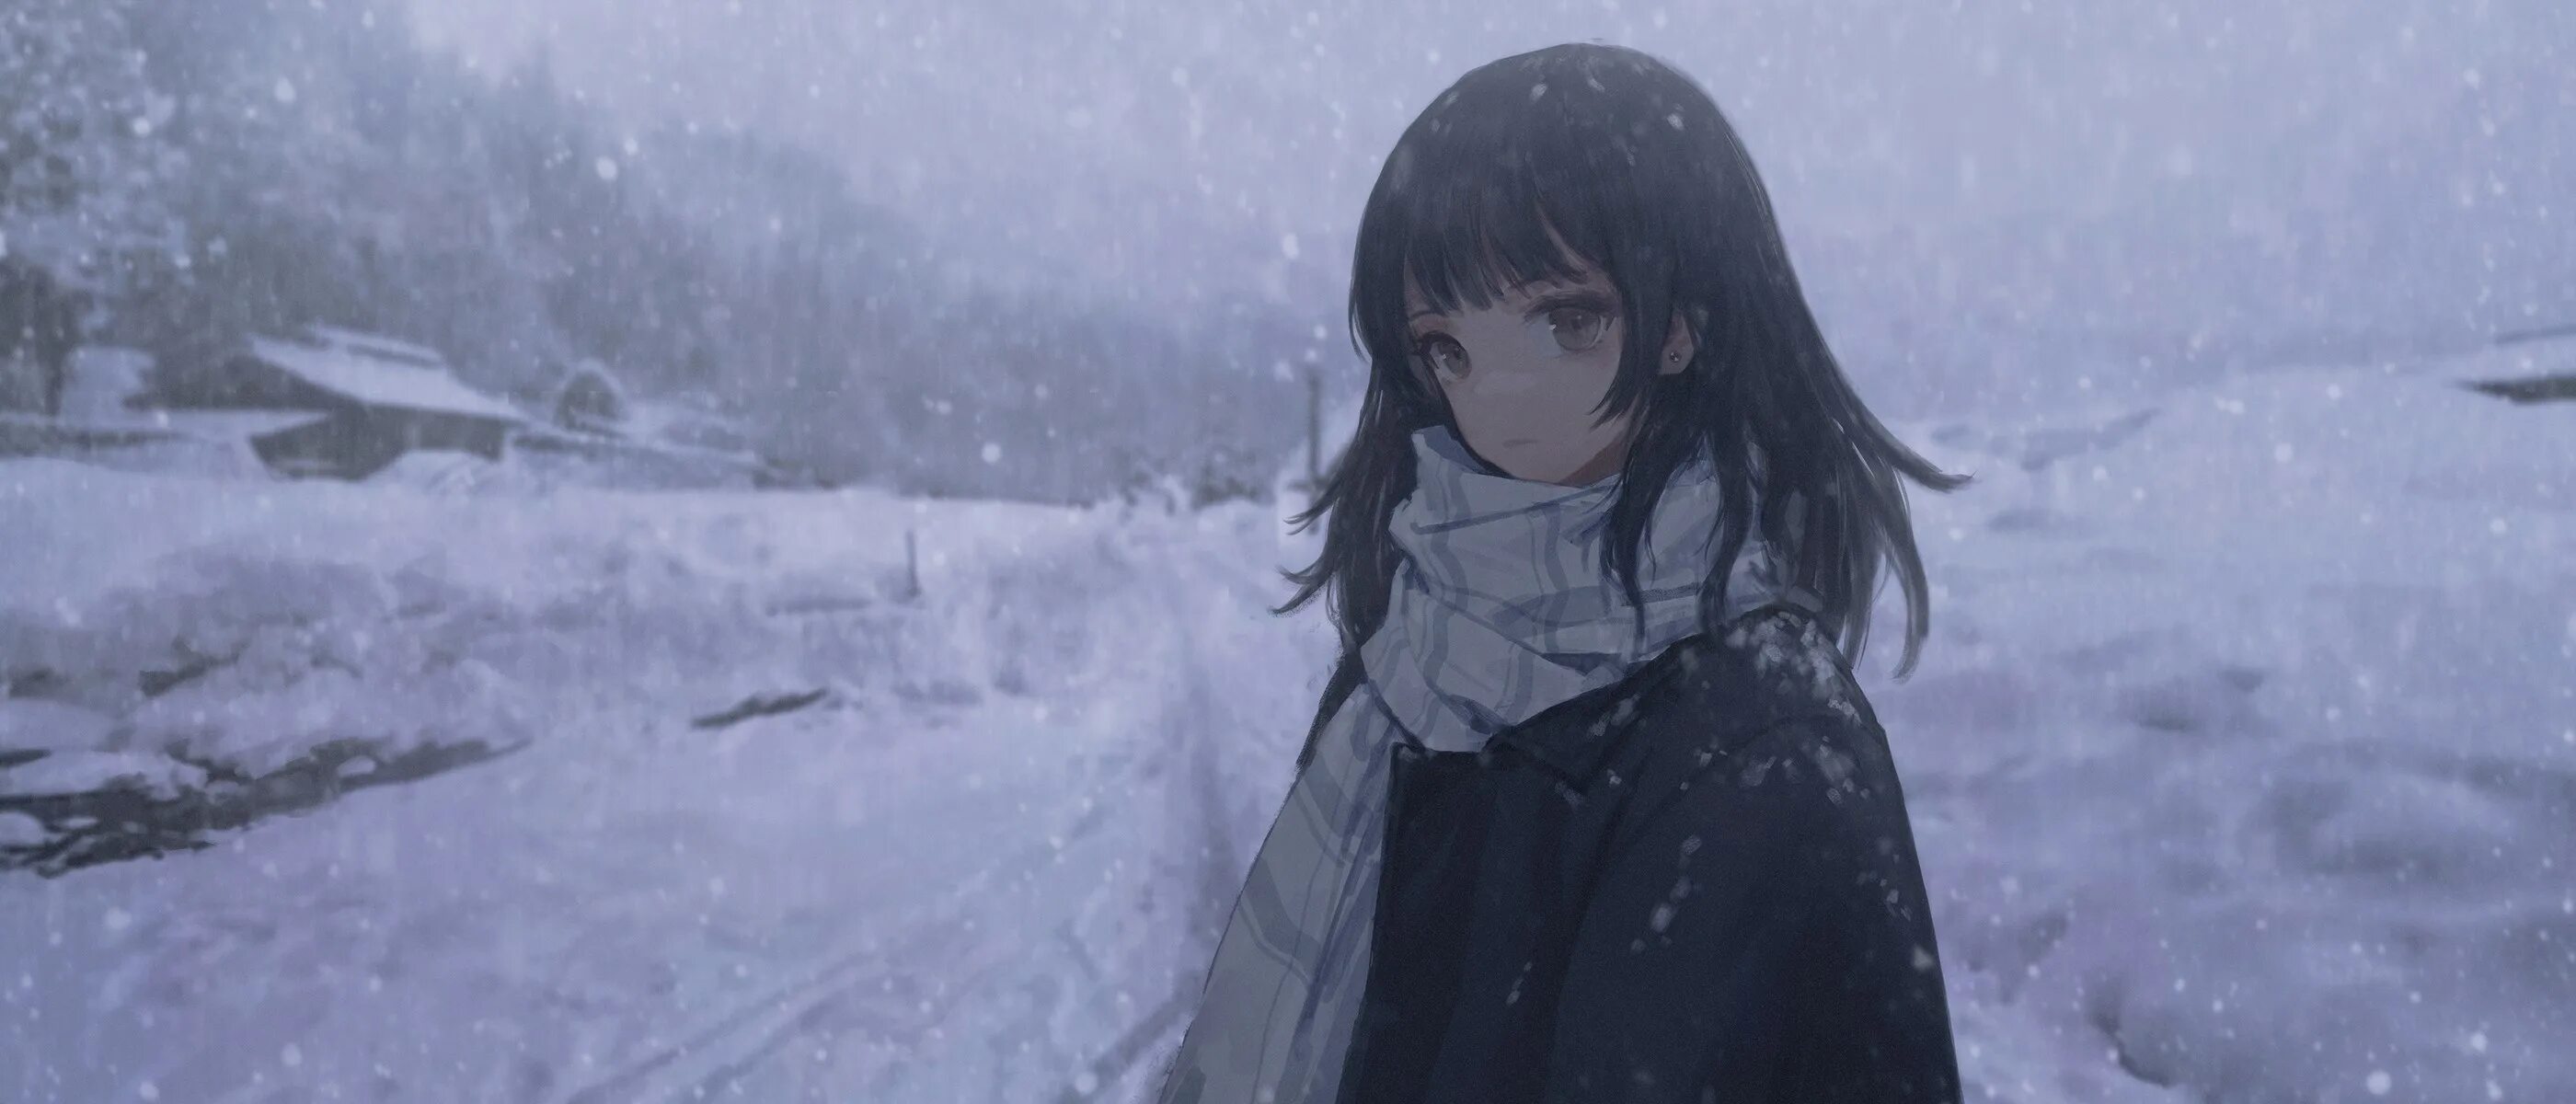 А может просто снегом стать. Аниме девушка замерзла. Холод. Аниме девочка плачет зимой. Одинокая девушка аниме зима.